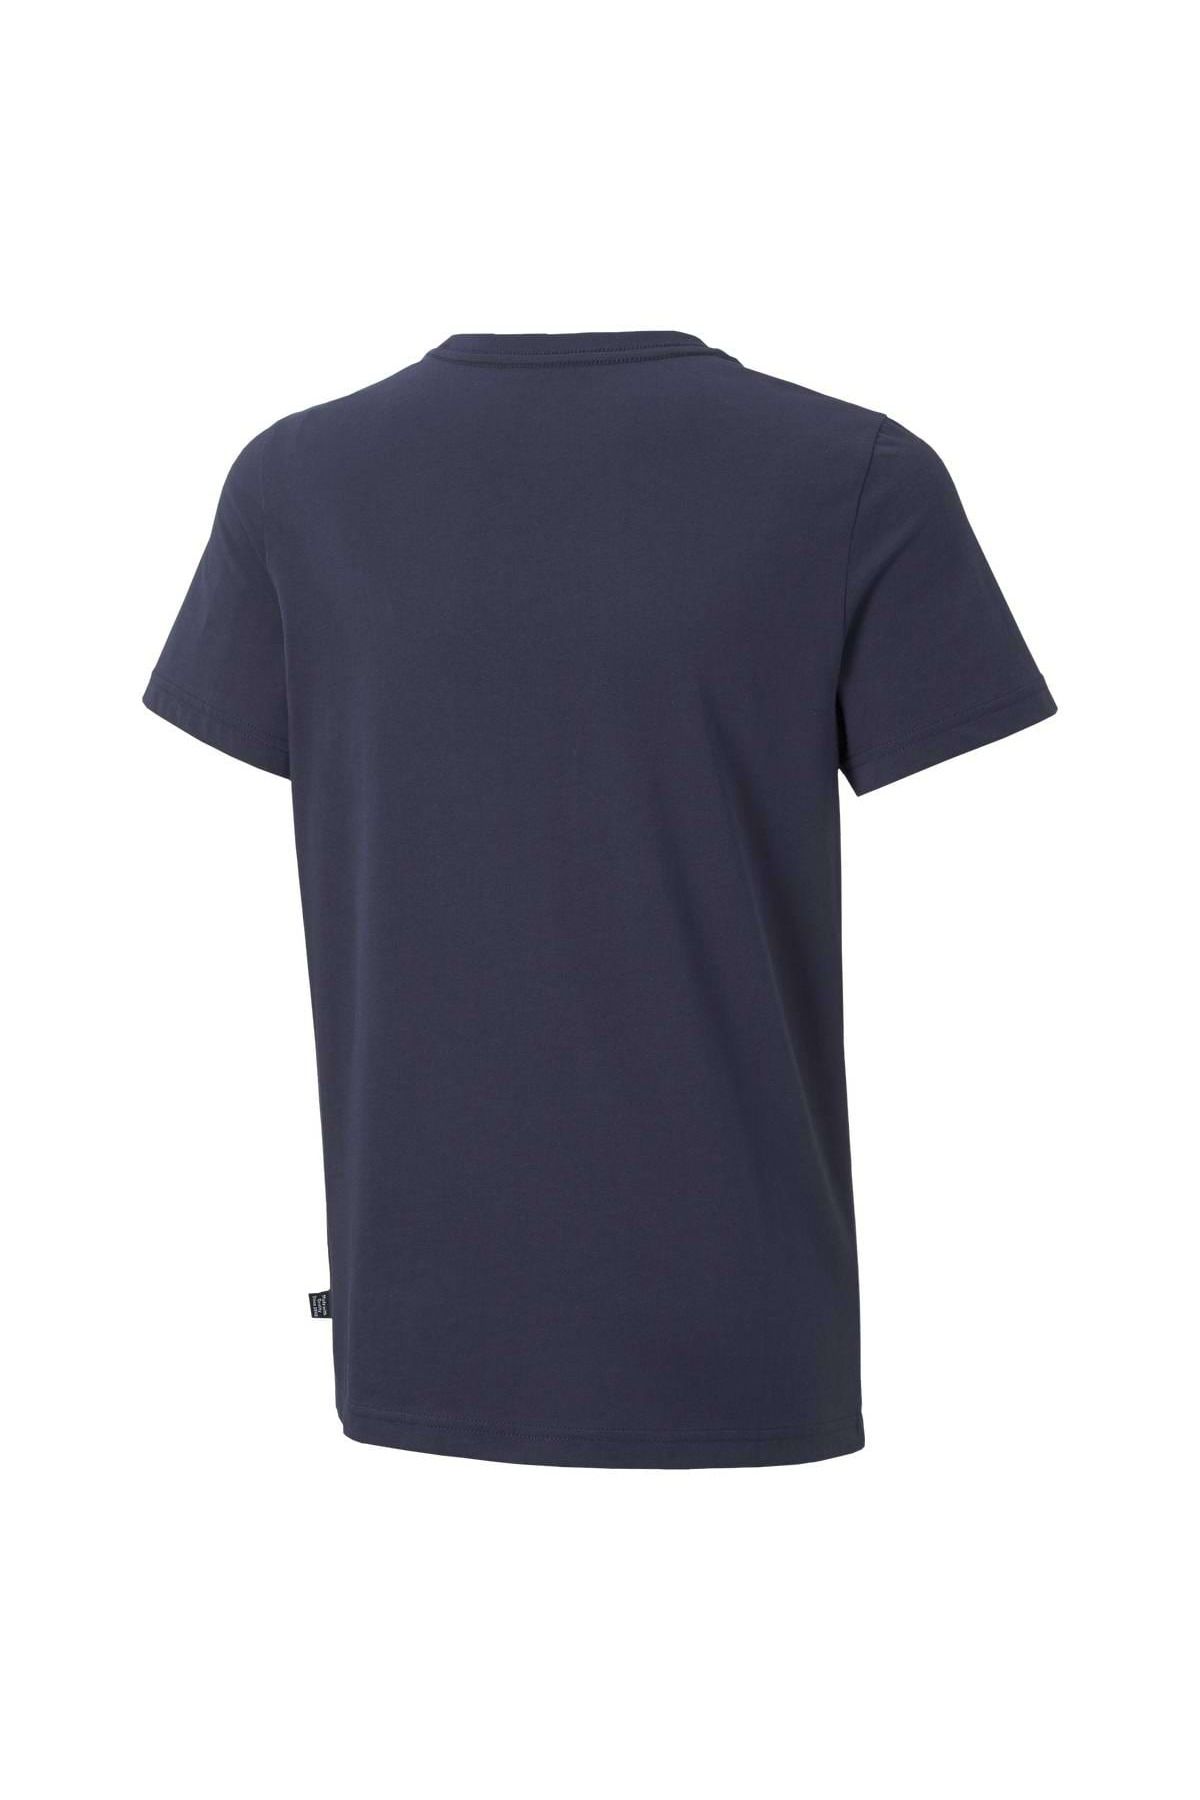 Puma Jungen T-Shirt 2 Logo - ESS+ Kurzarm, uni Col Trendyol Tee, Rundhals, 